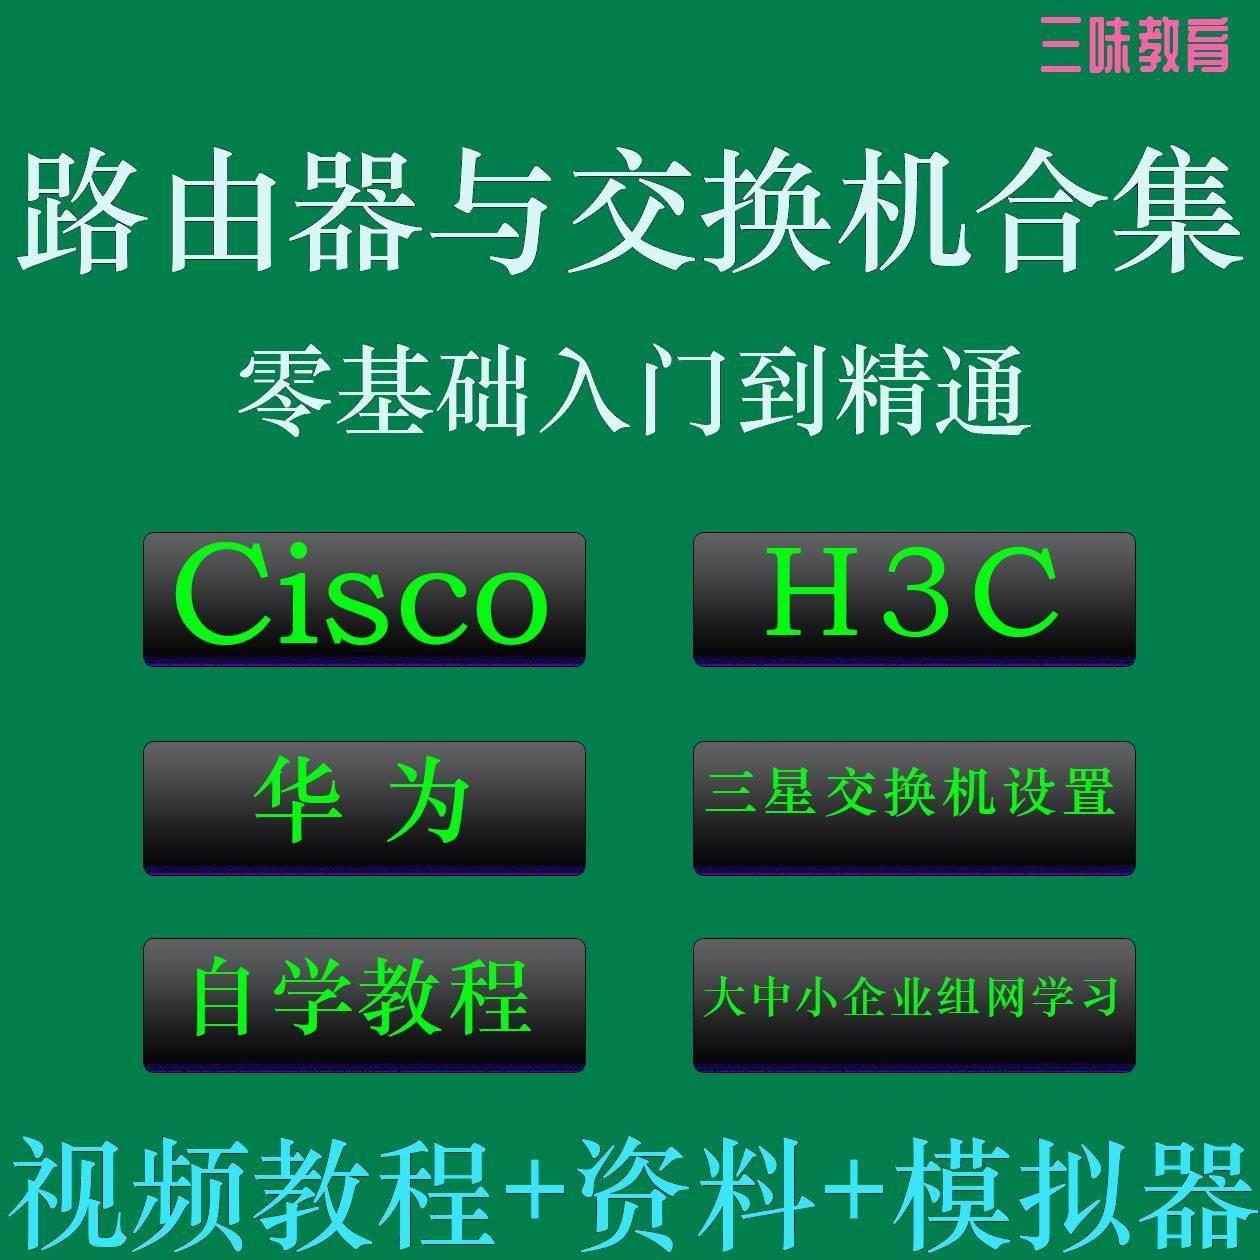 Cisco H3C华为路由器交换机配置视频教程经典合集自学资料模拟器